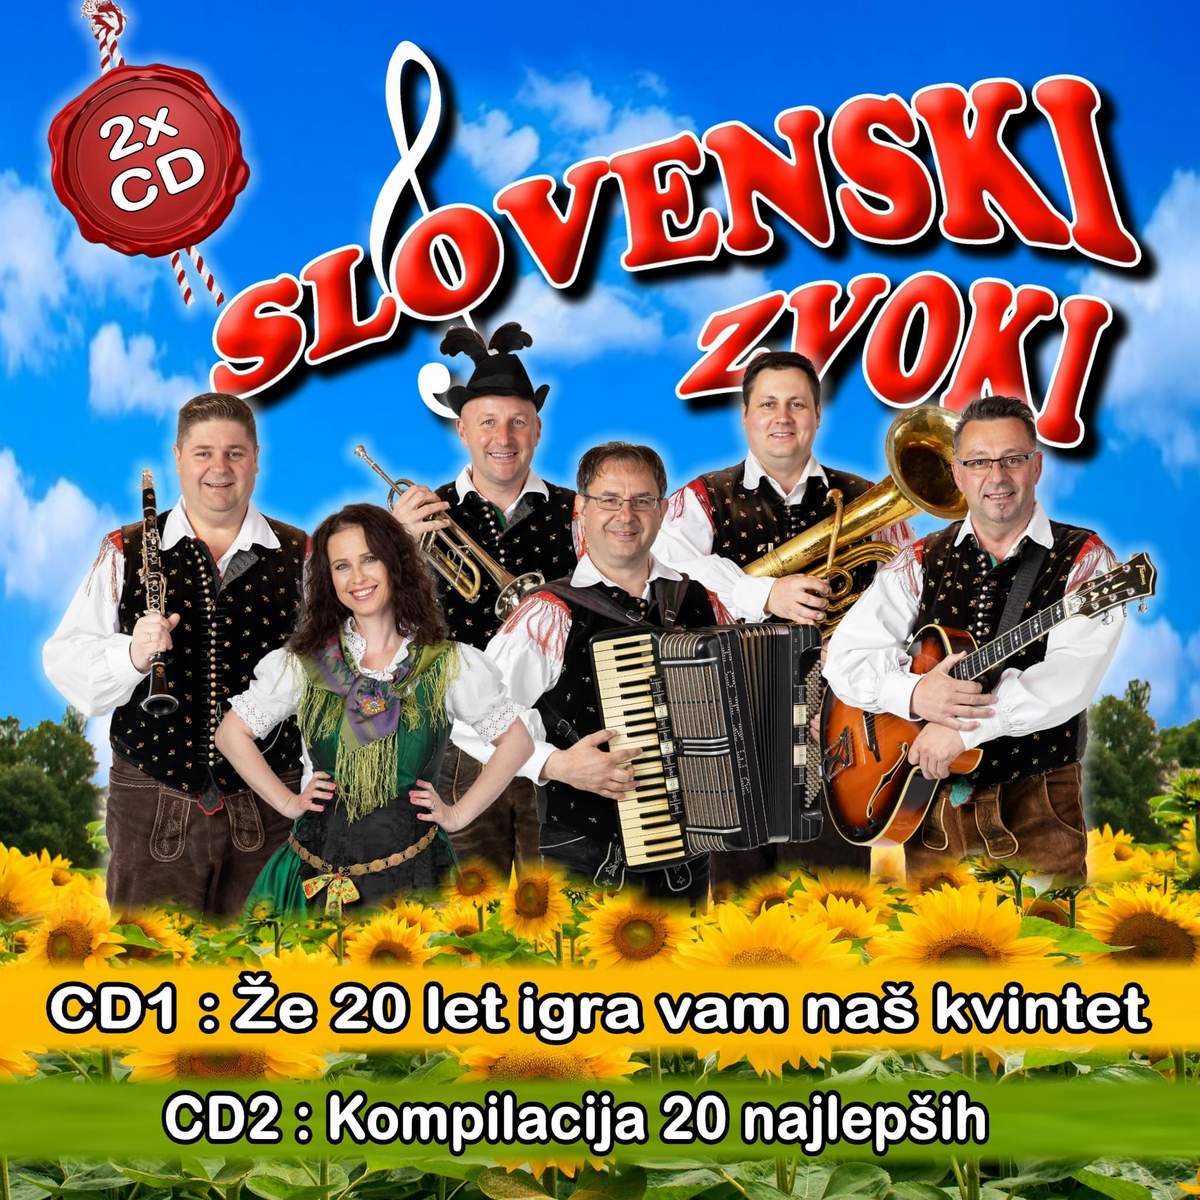 Slovenski zvoki